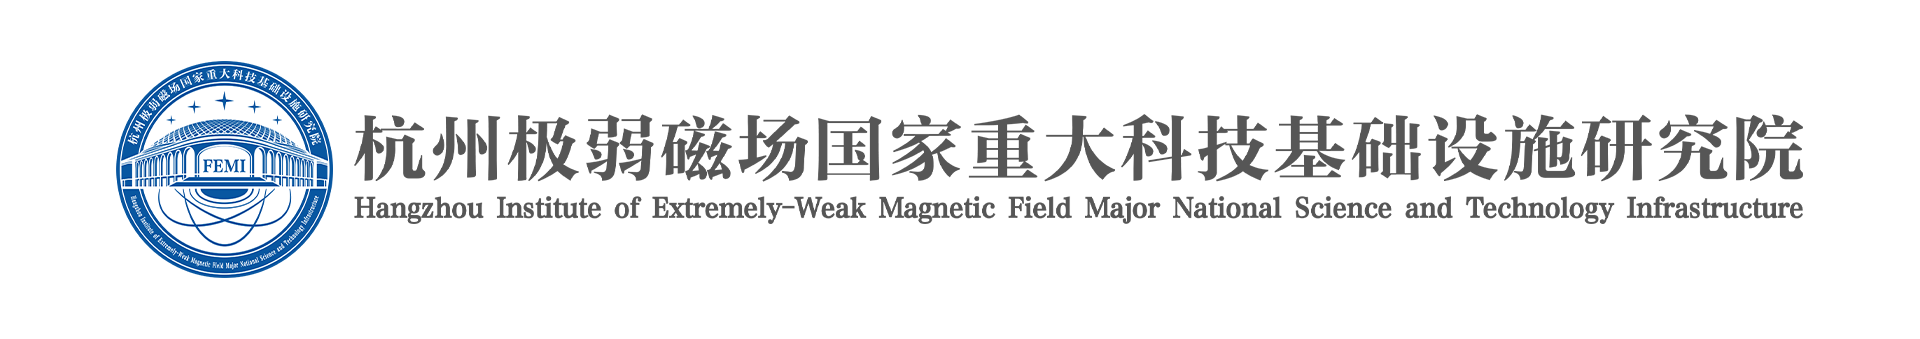 杭州极弱磁场国家重大科技基础设施研究院